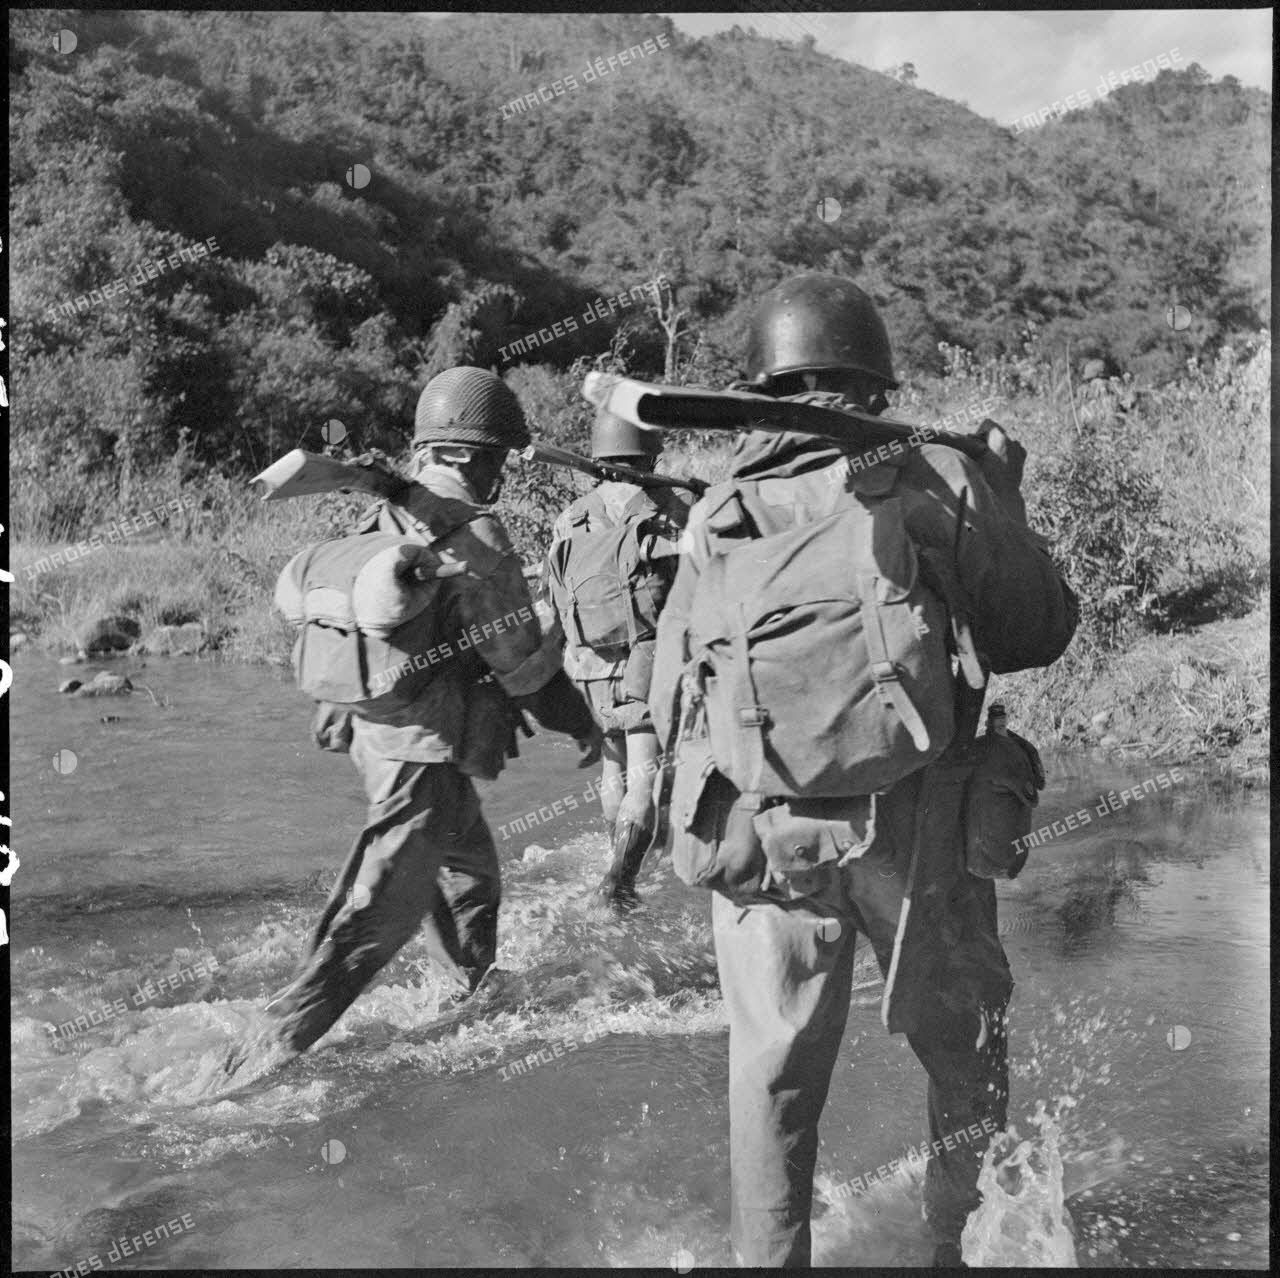 Traversée d'un ruisseau de montagne par les parachutistes de la colonne Langlais se dirigeant vers le Laos.